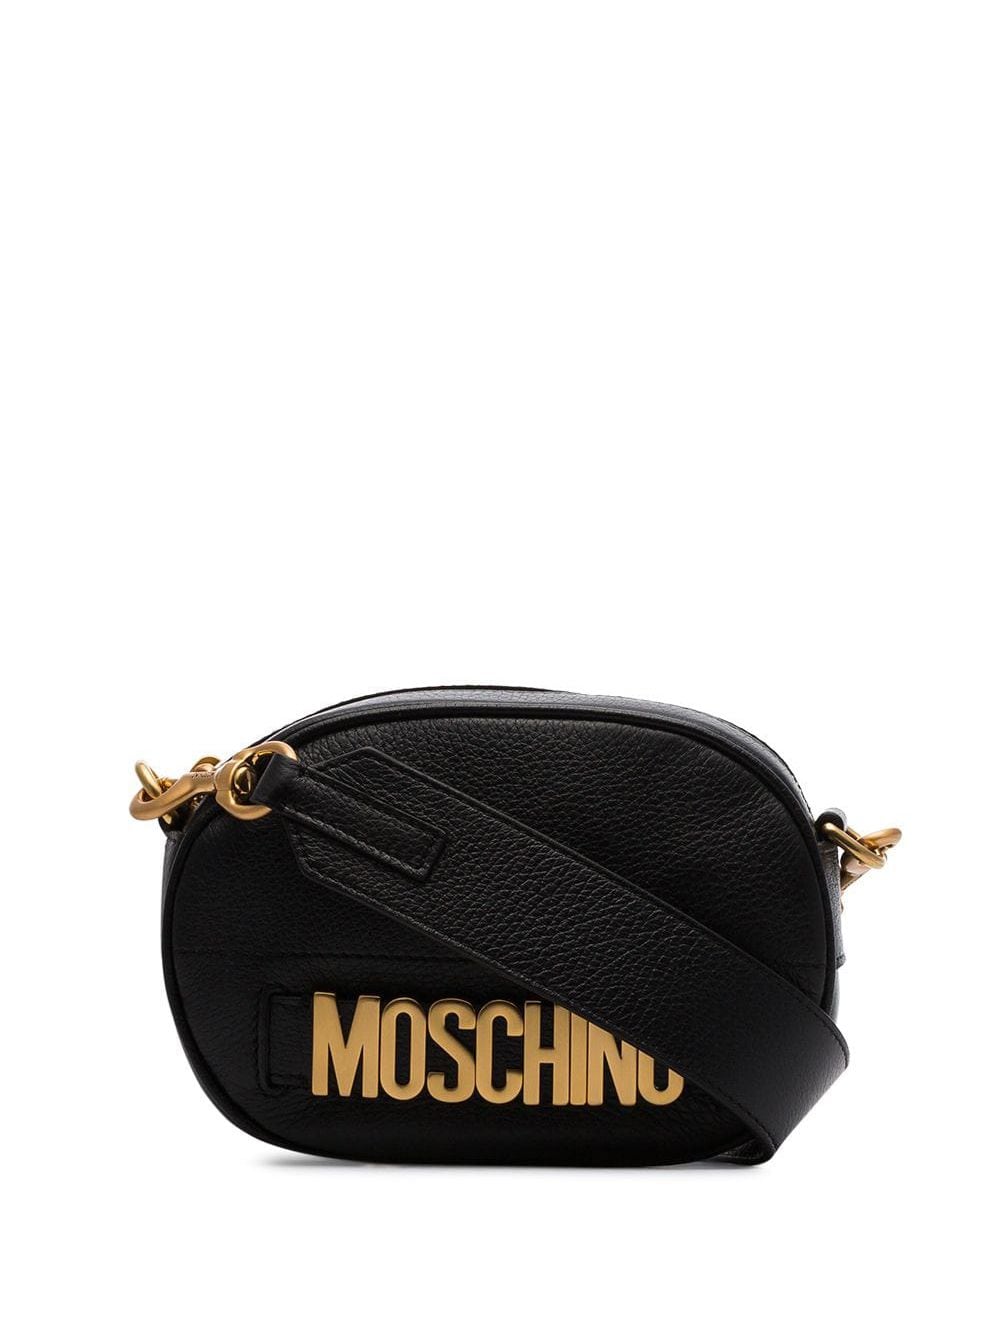 фото Moschino прямоугольная сумка с логотипом